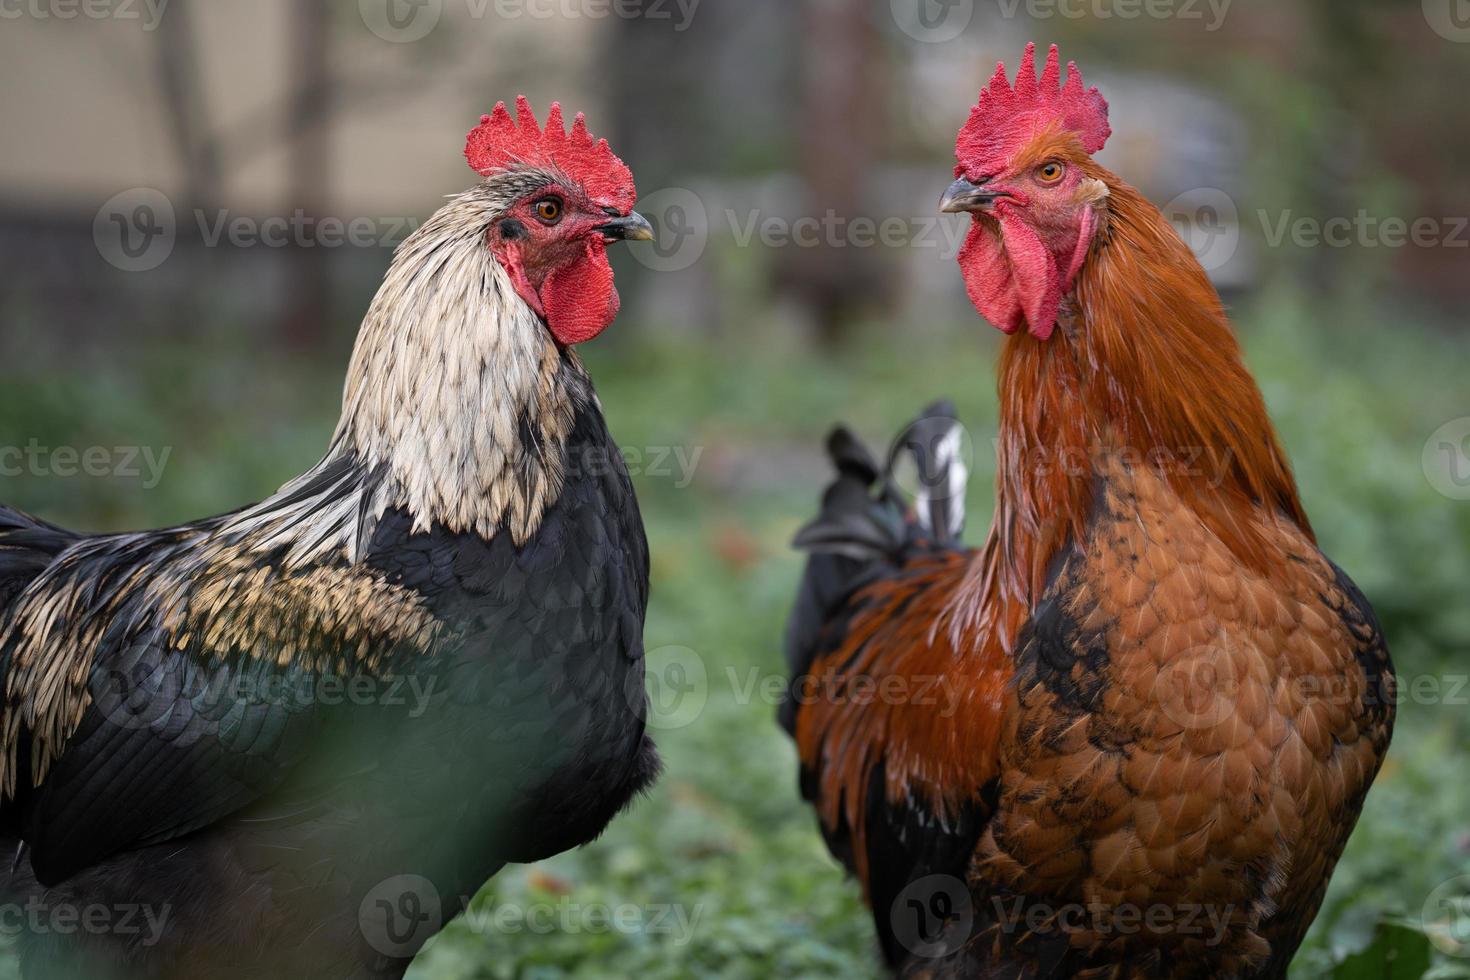 mooi kippen en hanen buitenshuis in de tuin. foto